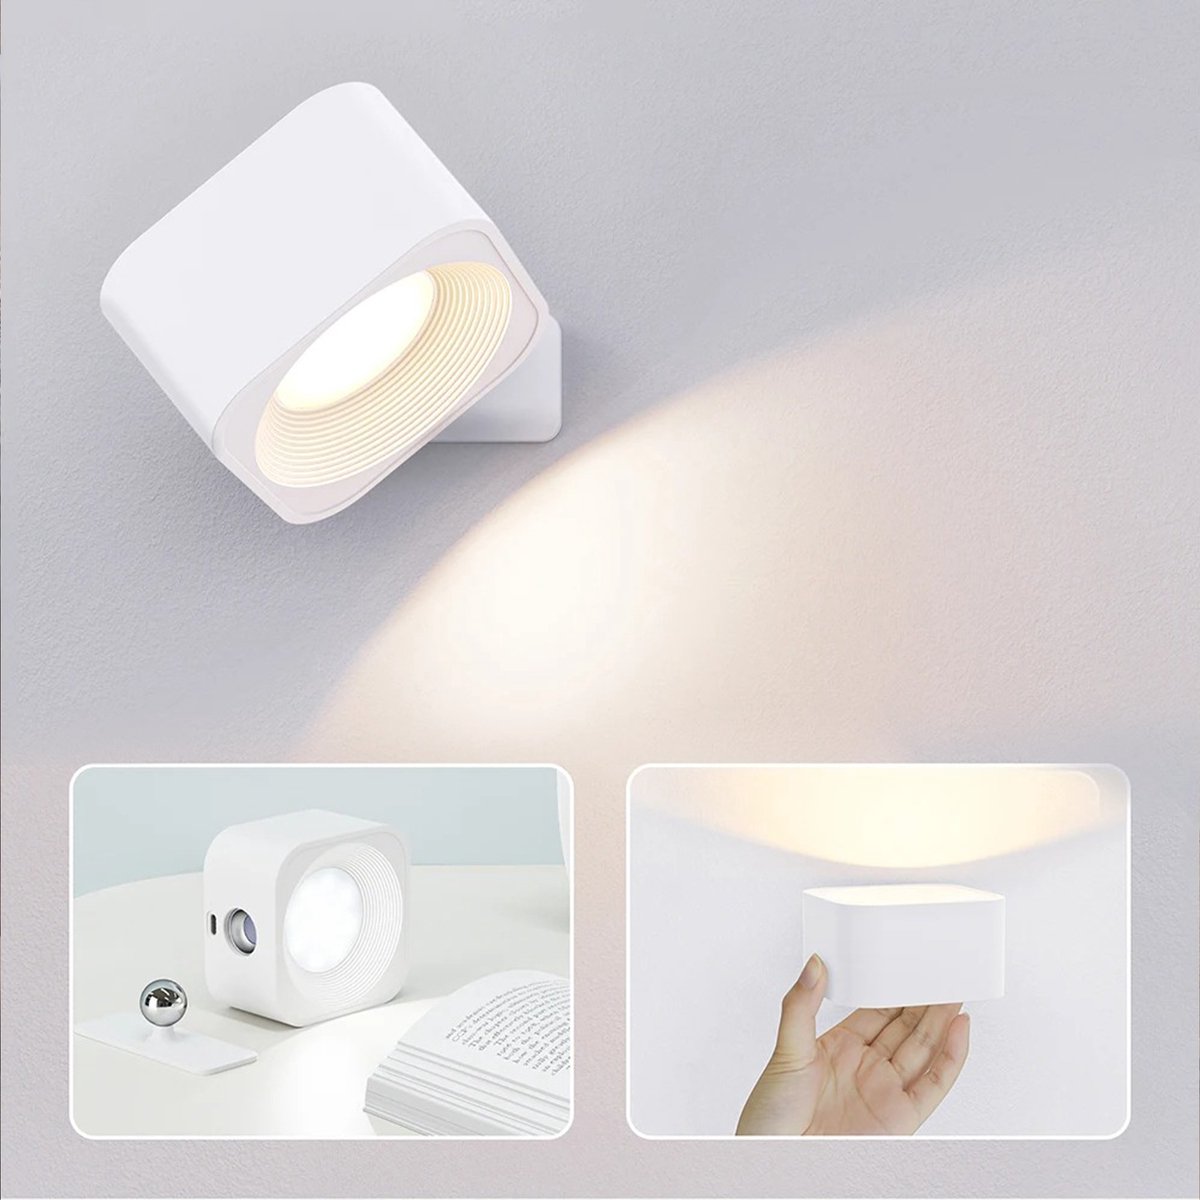 Luxor Home - LED Wandlamp Oplaadbaar - Wandlamp Binnen - Oplaadbaar - Dimbaar - 360º Rotatie - Oplaadbare Wandlamp - Slaapkamer - Woonkamer - Zonder Boren - Draadloos - 3 Kleuren Temperaturen -